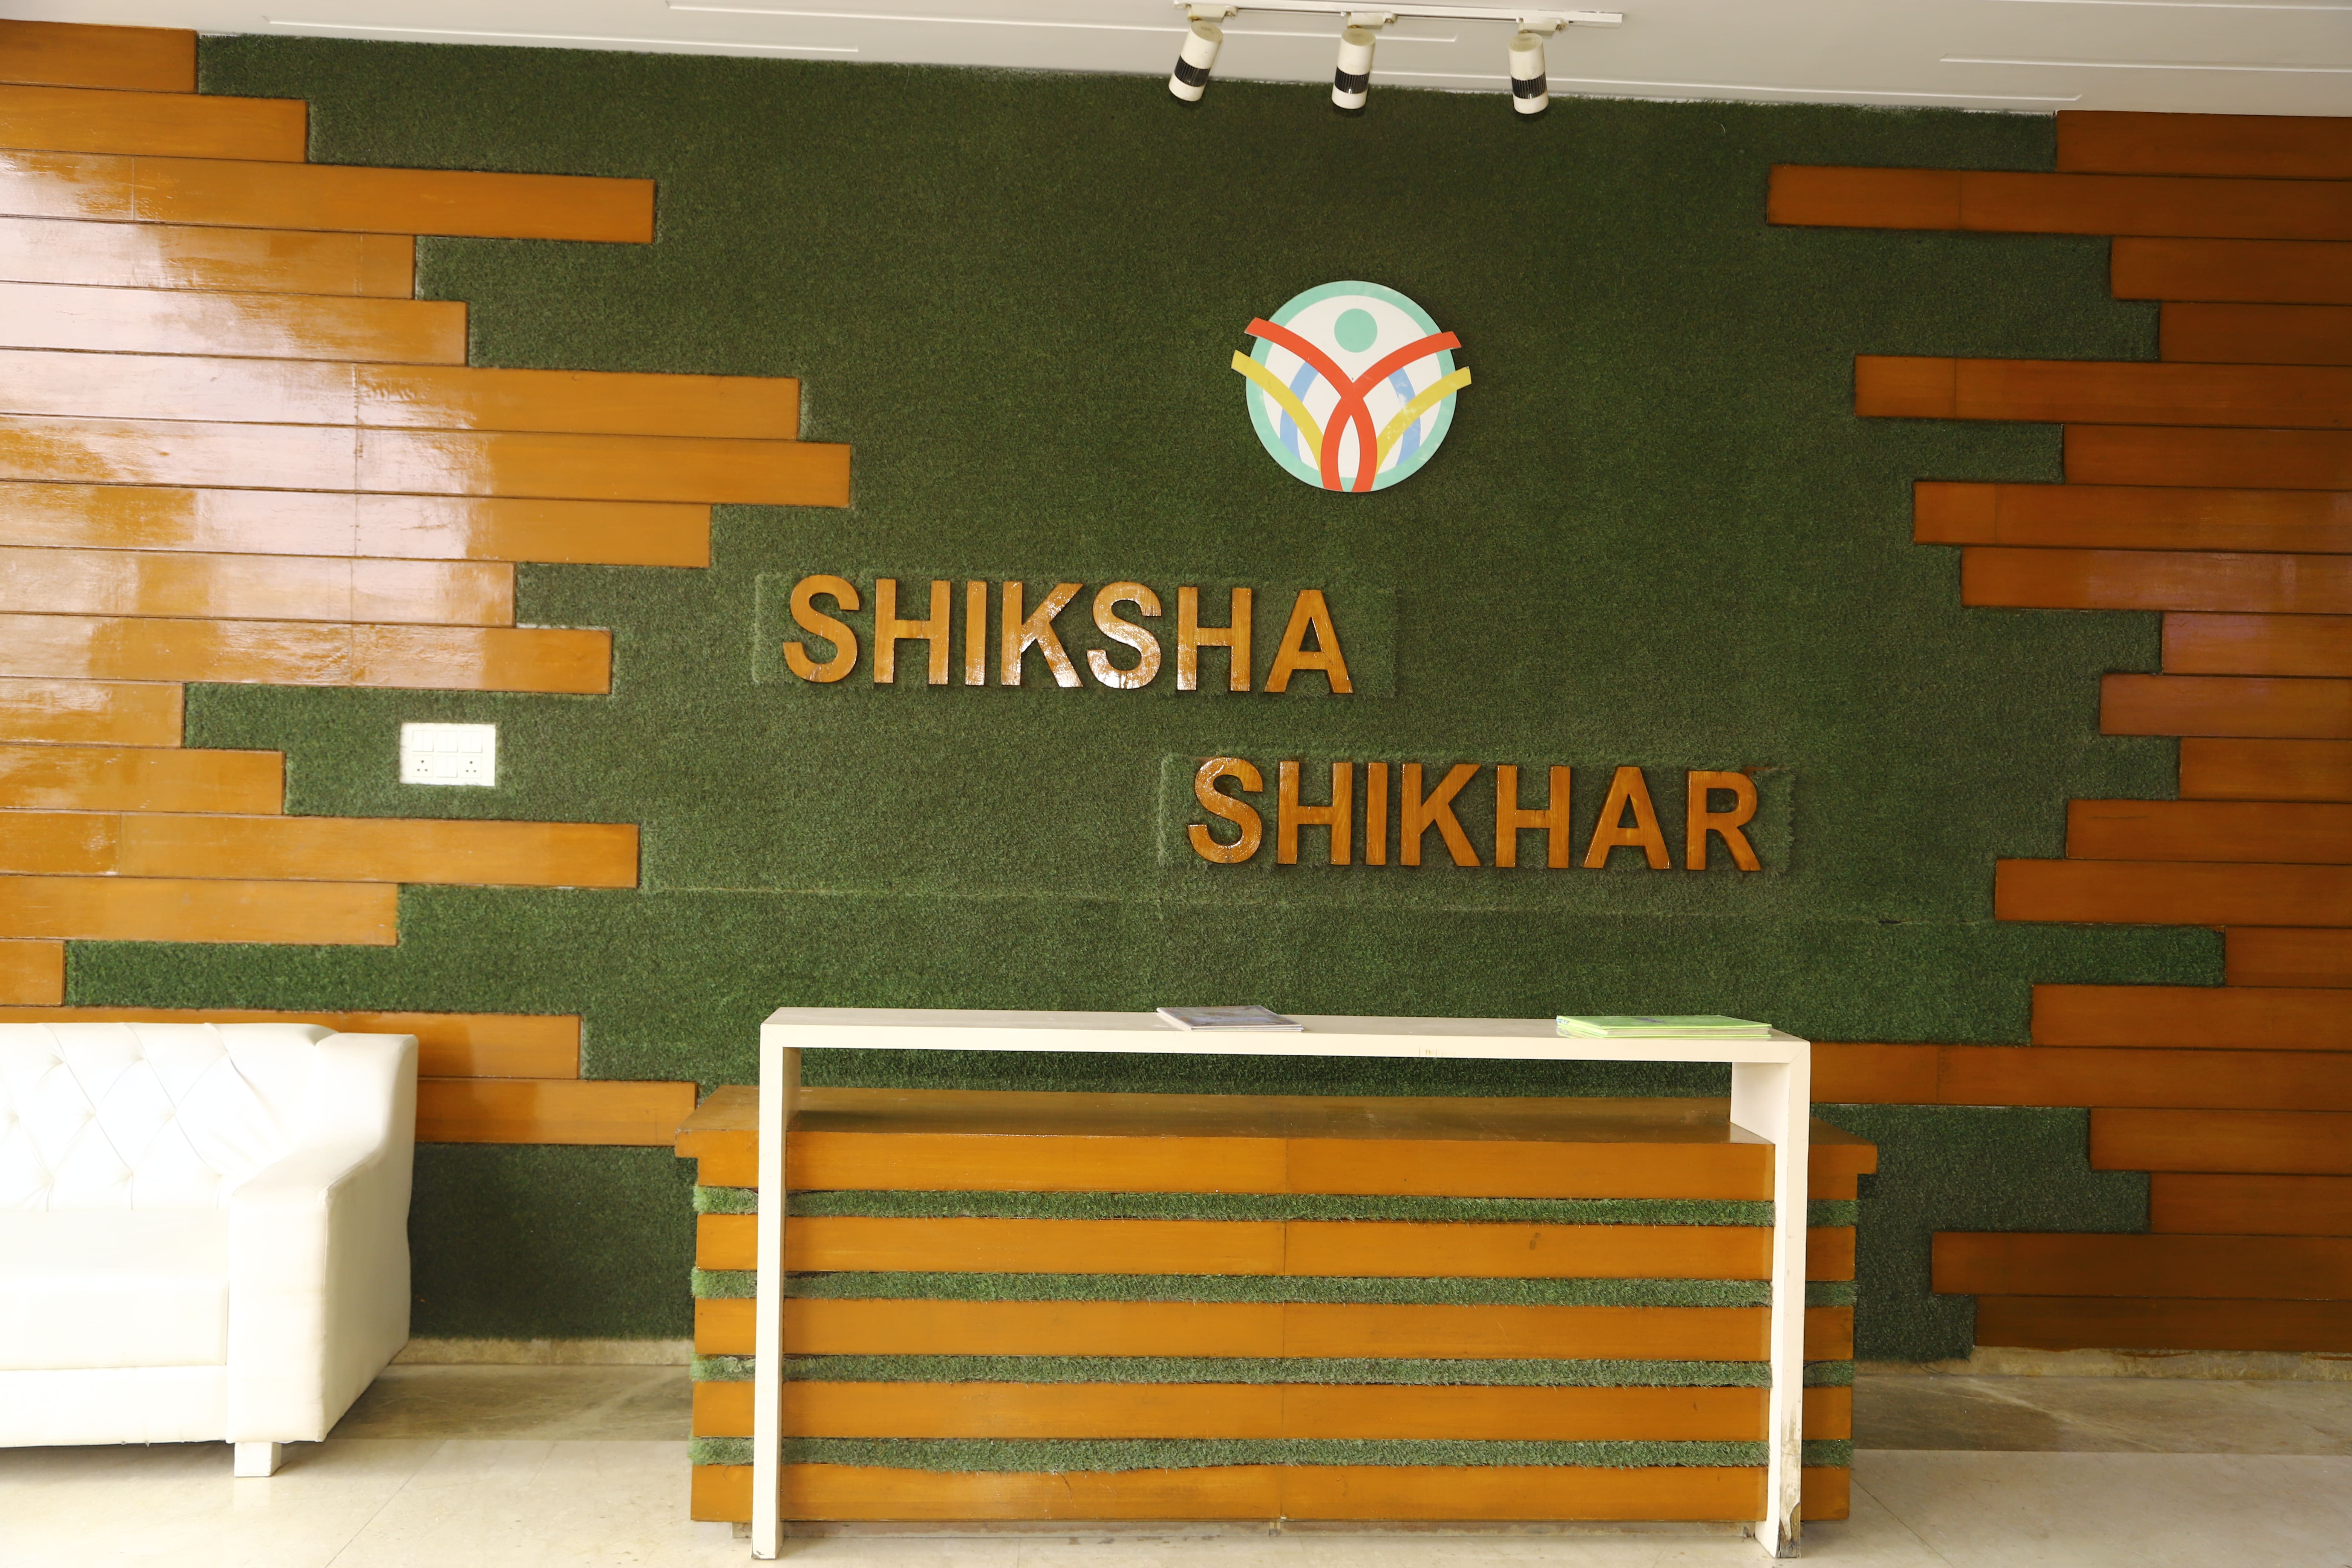 Shiksha Shikhar